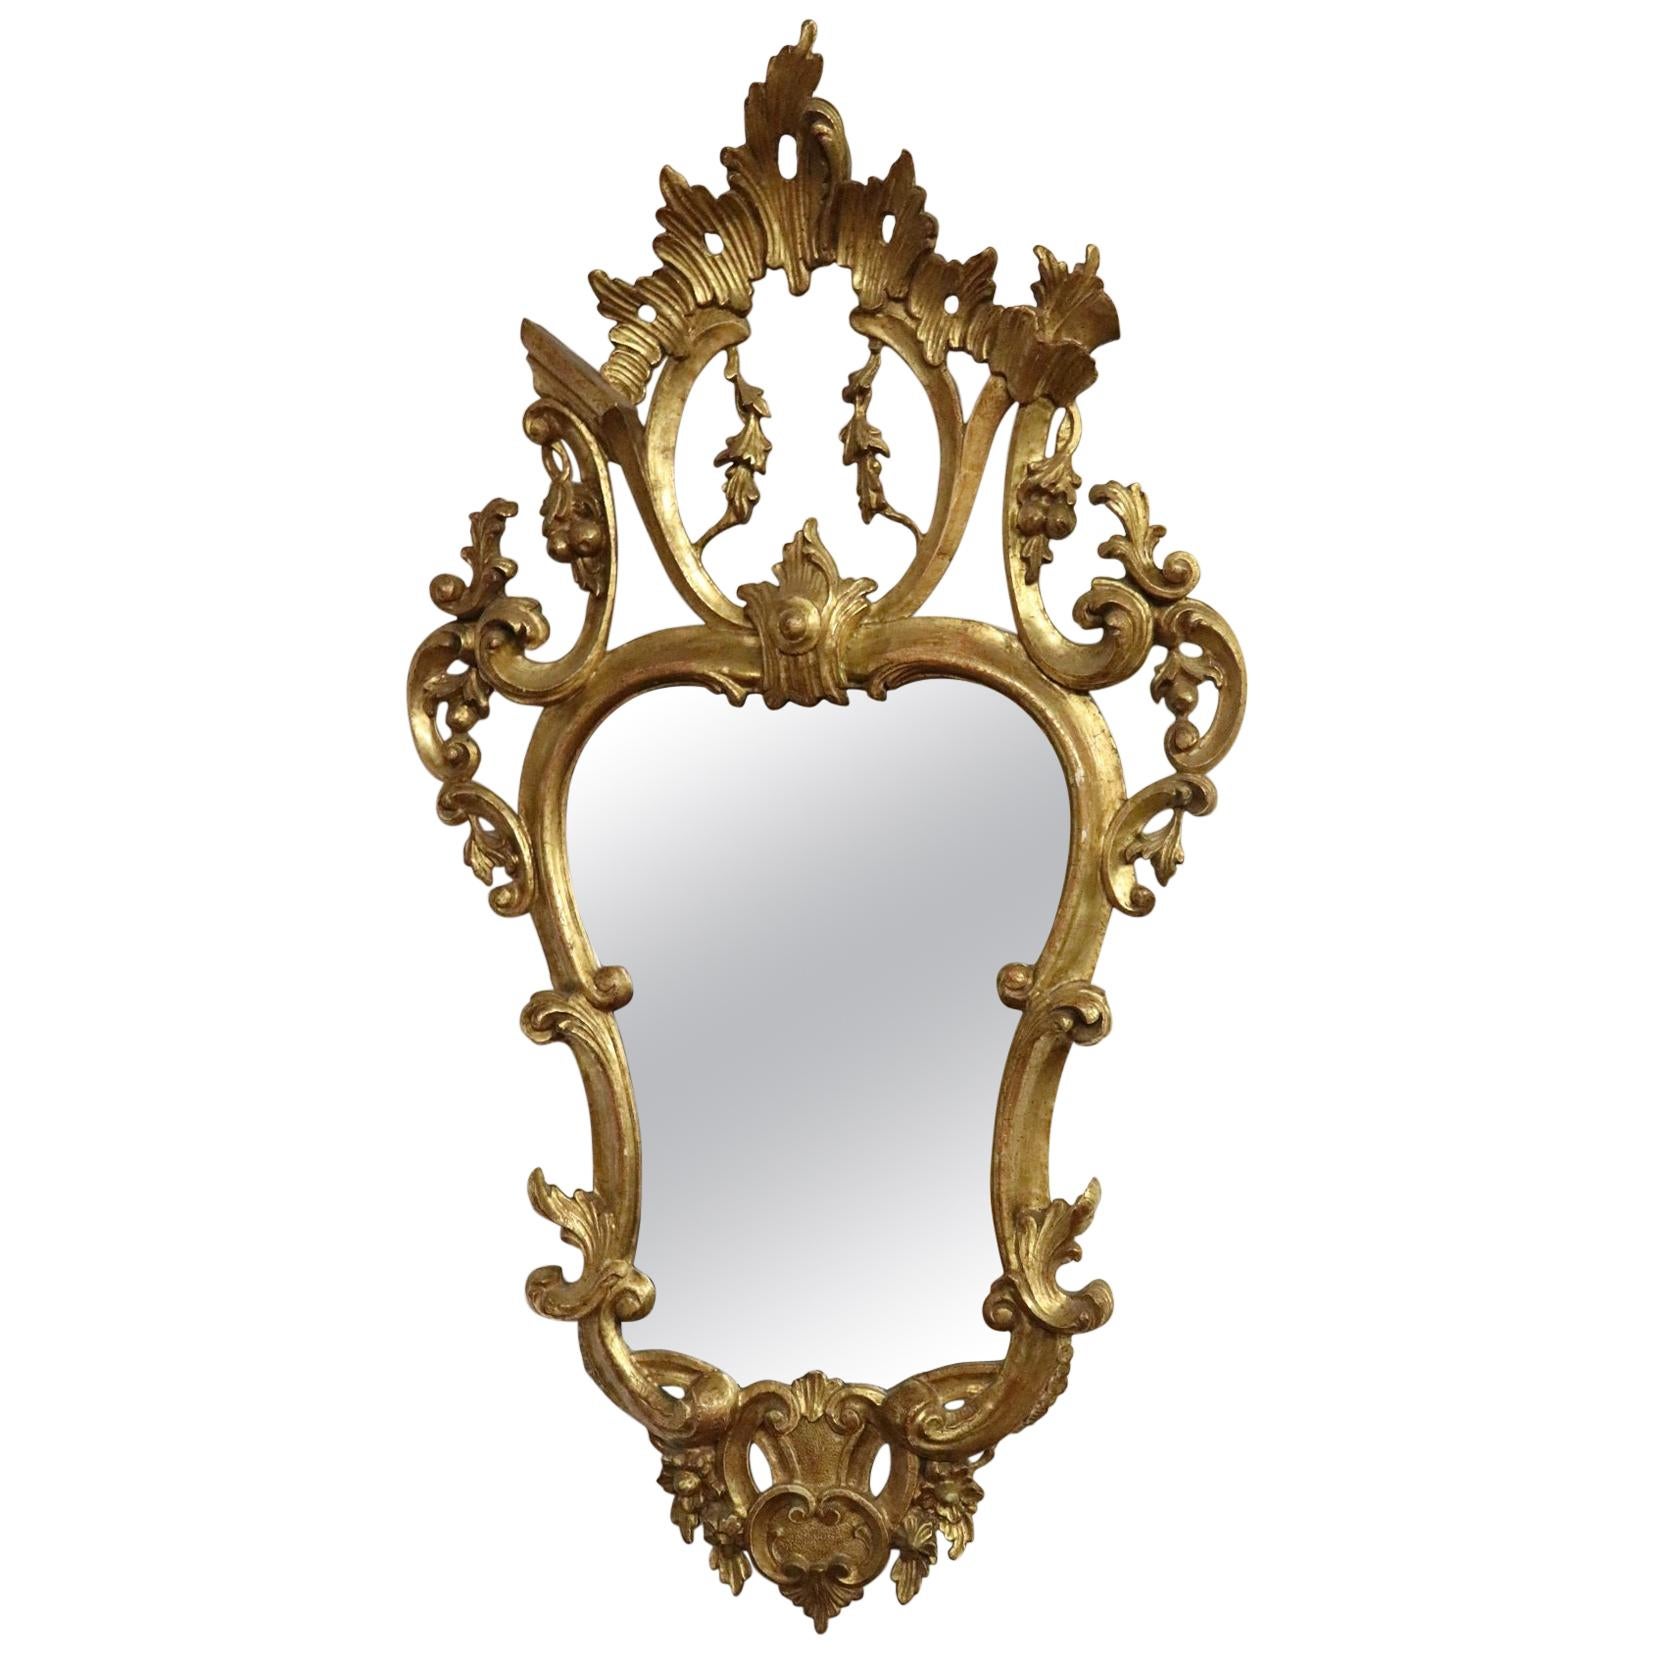 20th Century Italian Louis XV Style Golden Wood Luxury Wall Mirror